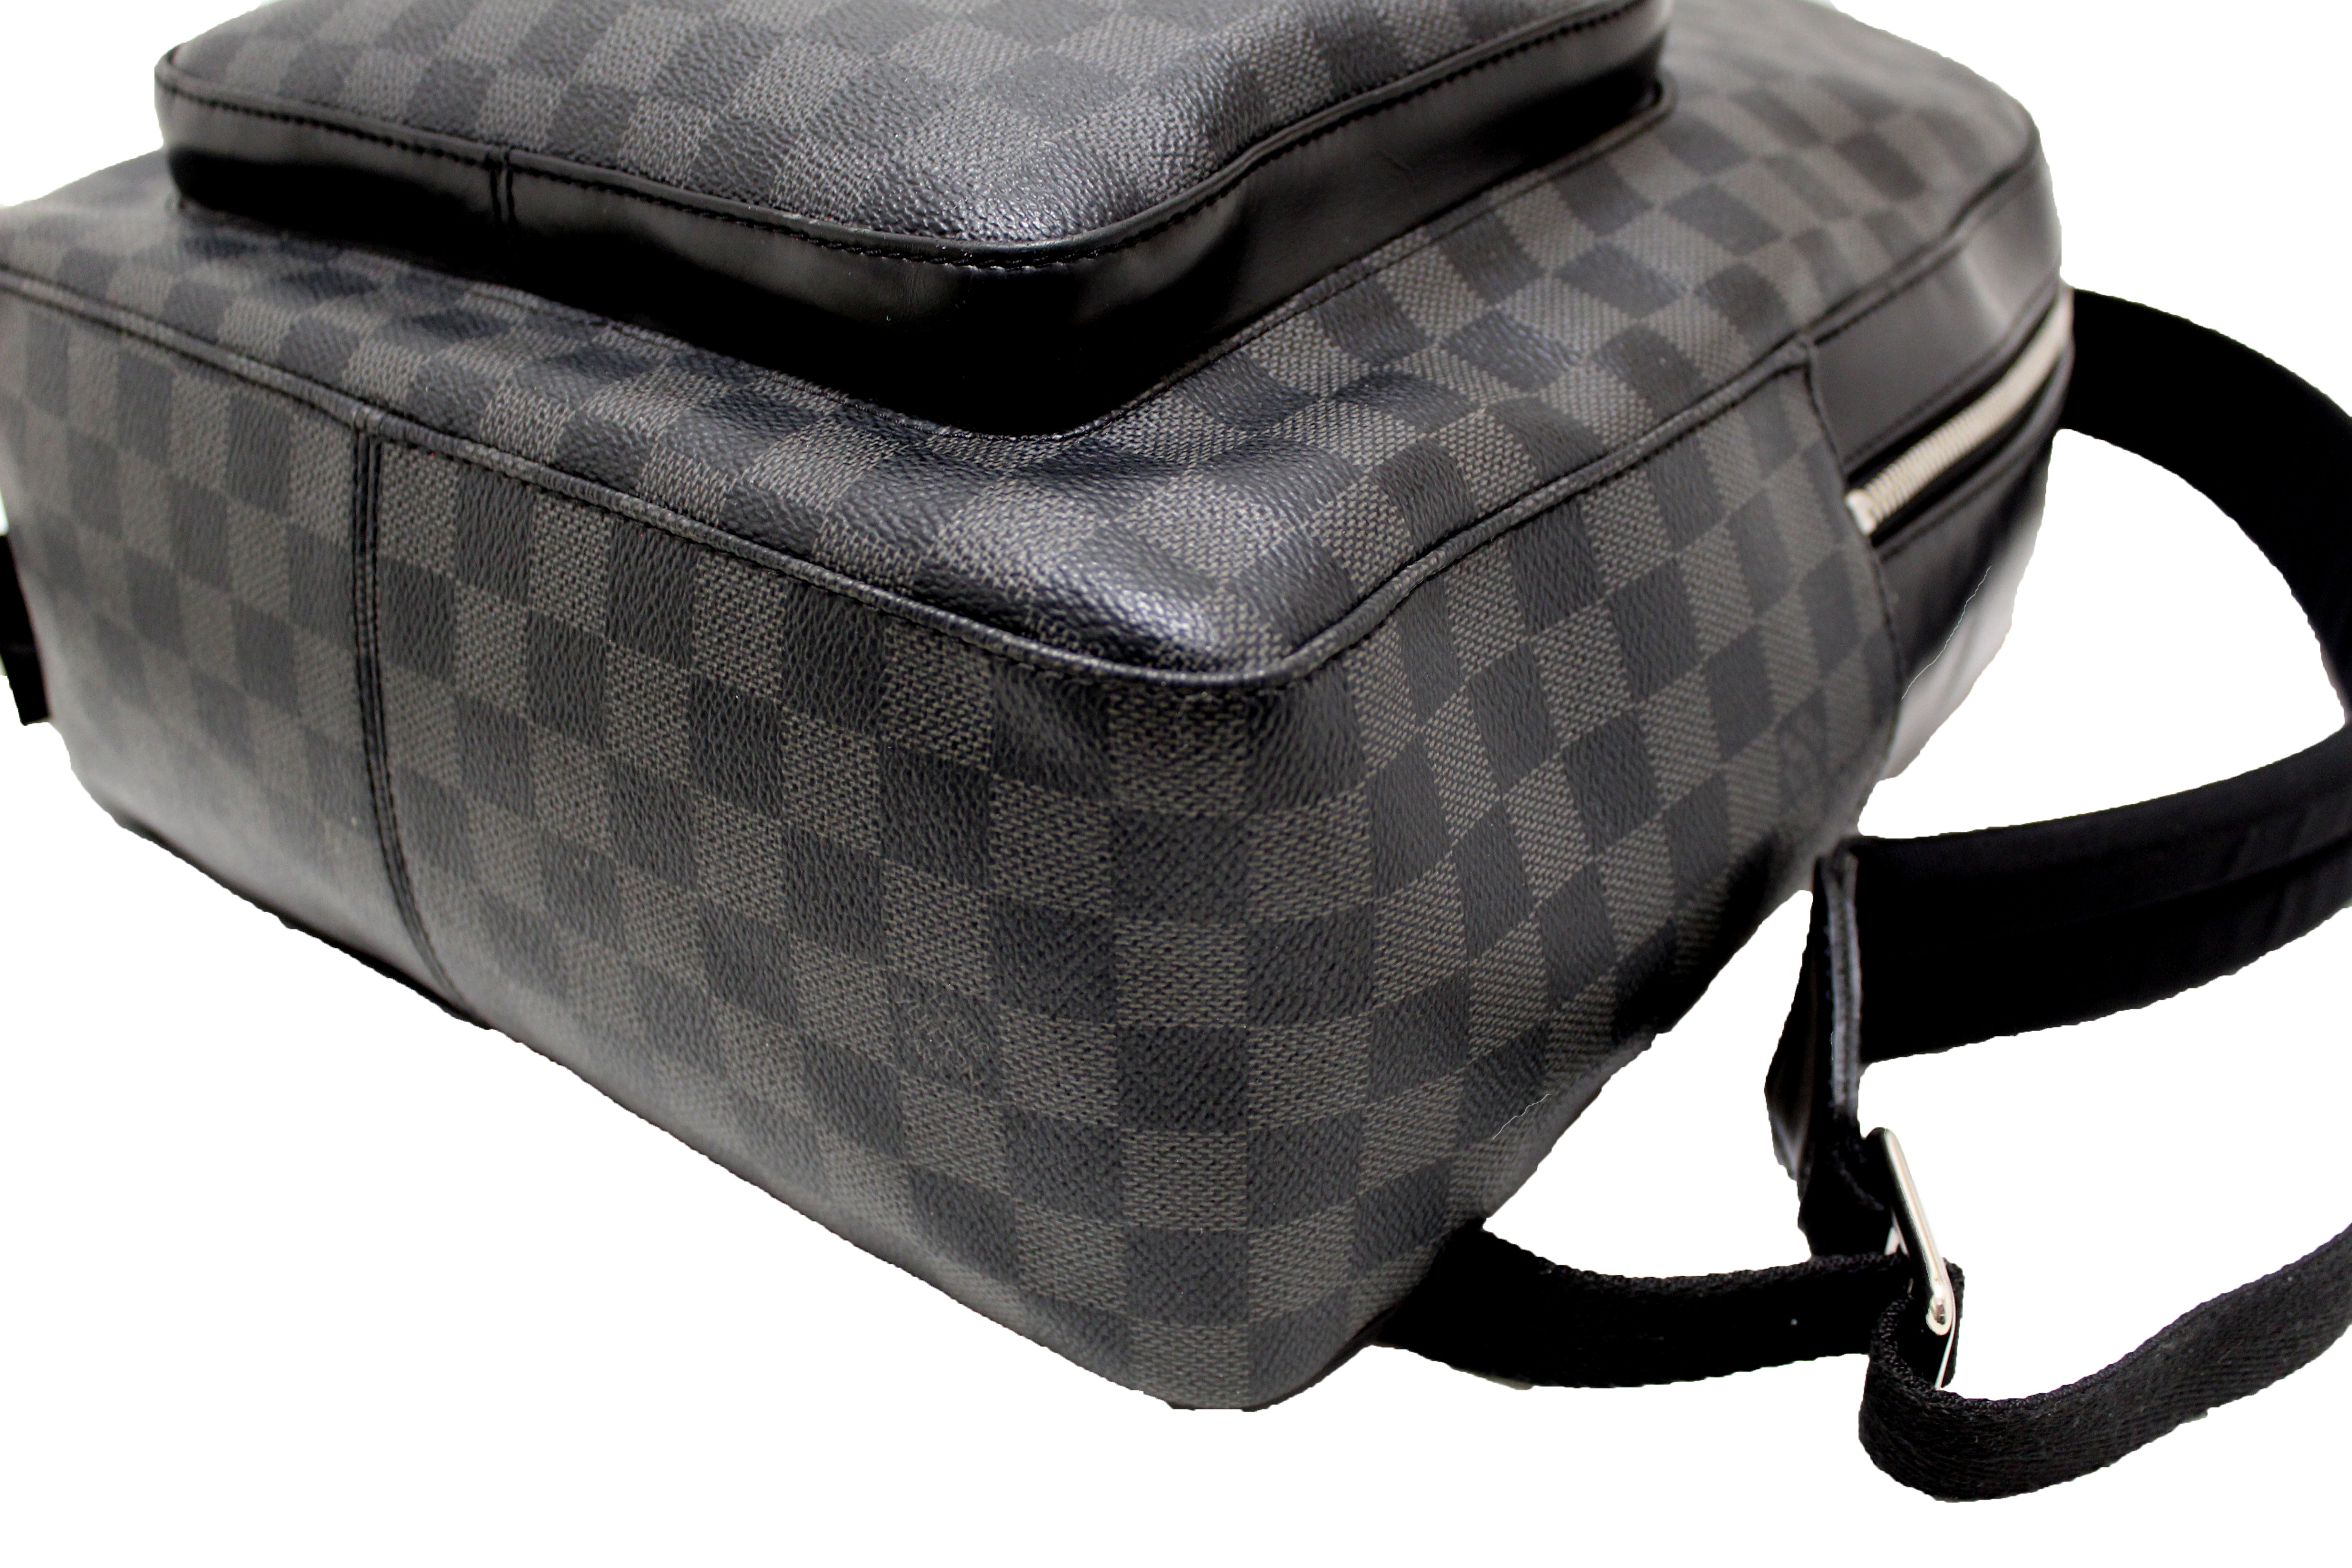 Authentic Louis Vuitton Damier Graphite Josh Backpack